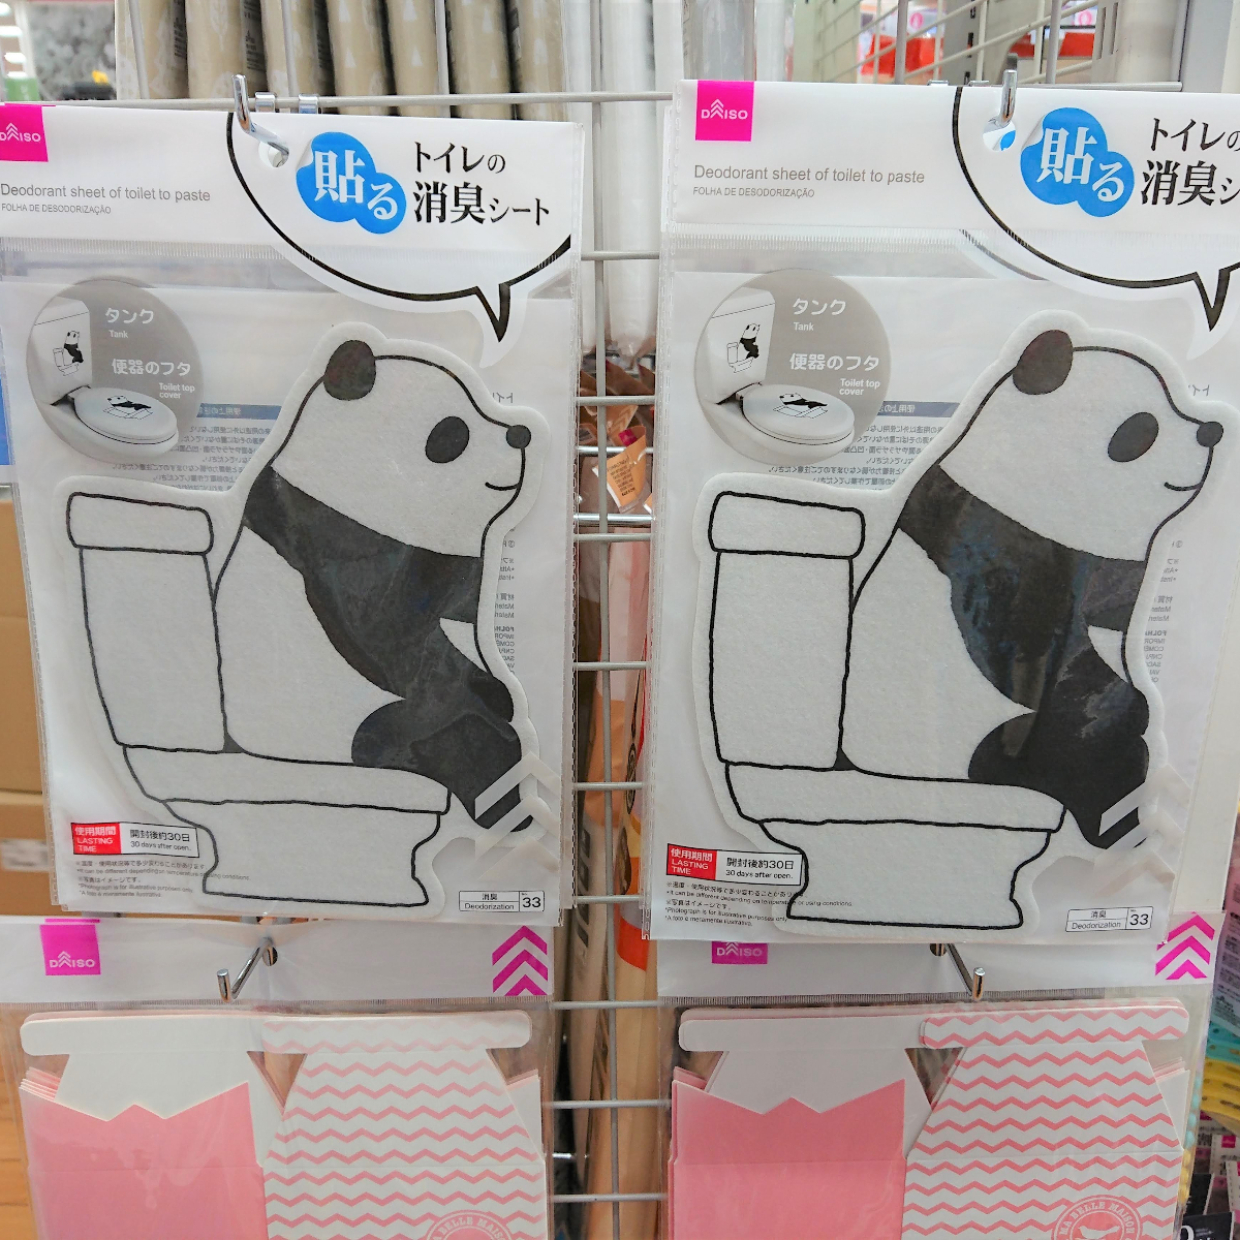  【ダイソー】パンダ柄がかわいすぎ♡貼るだけでOKの「トイレの消臭シート」が超使える♪ 